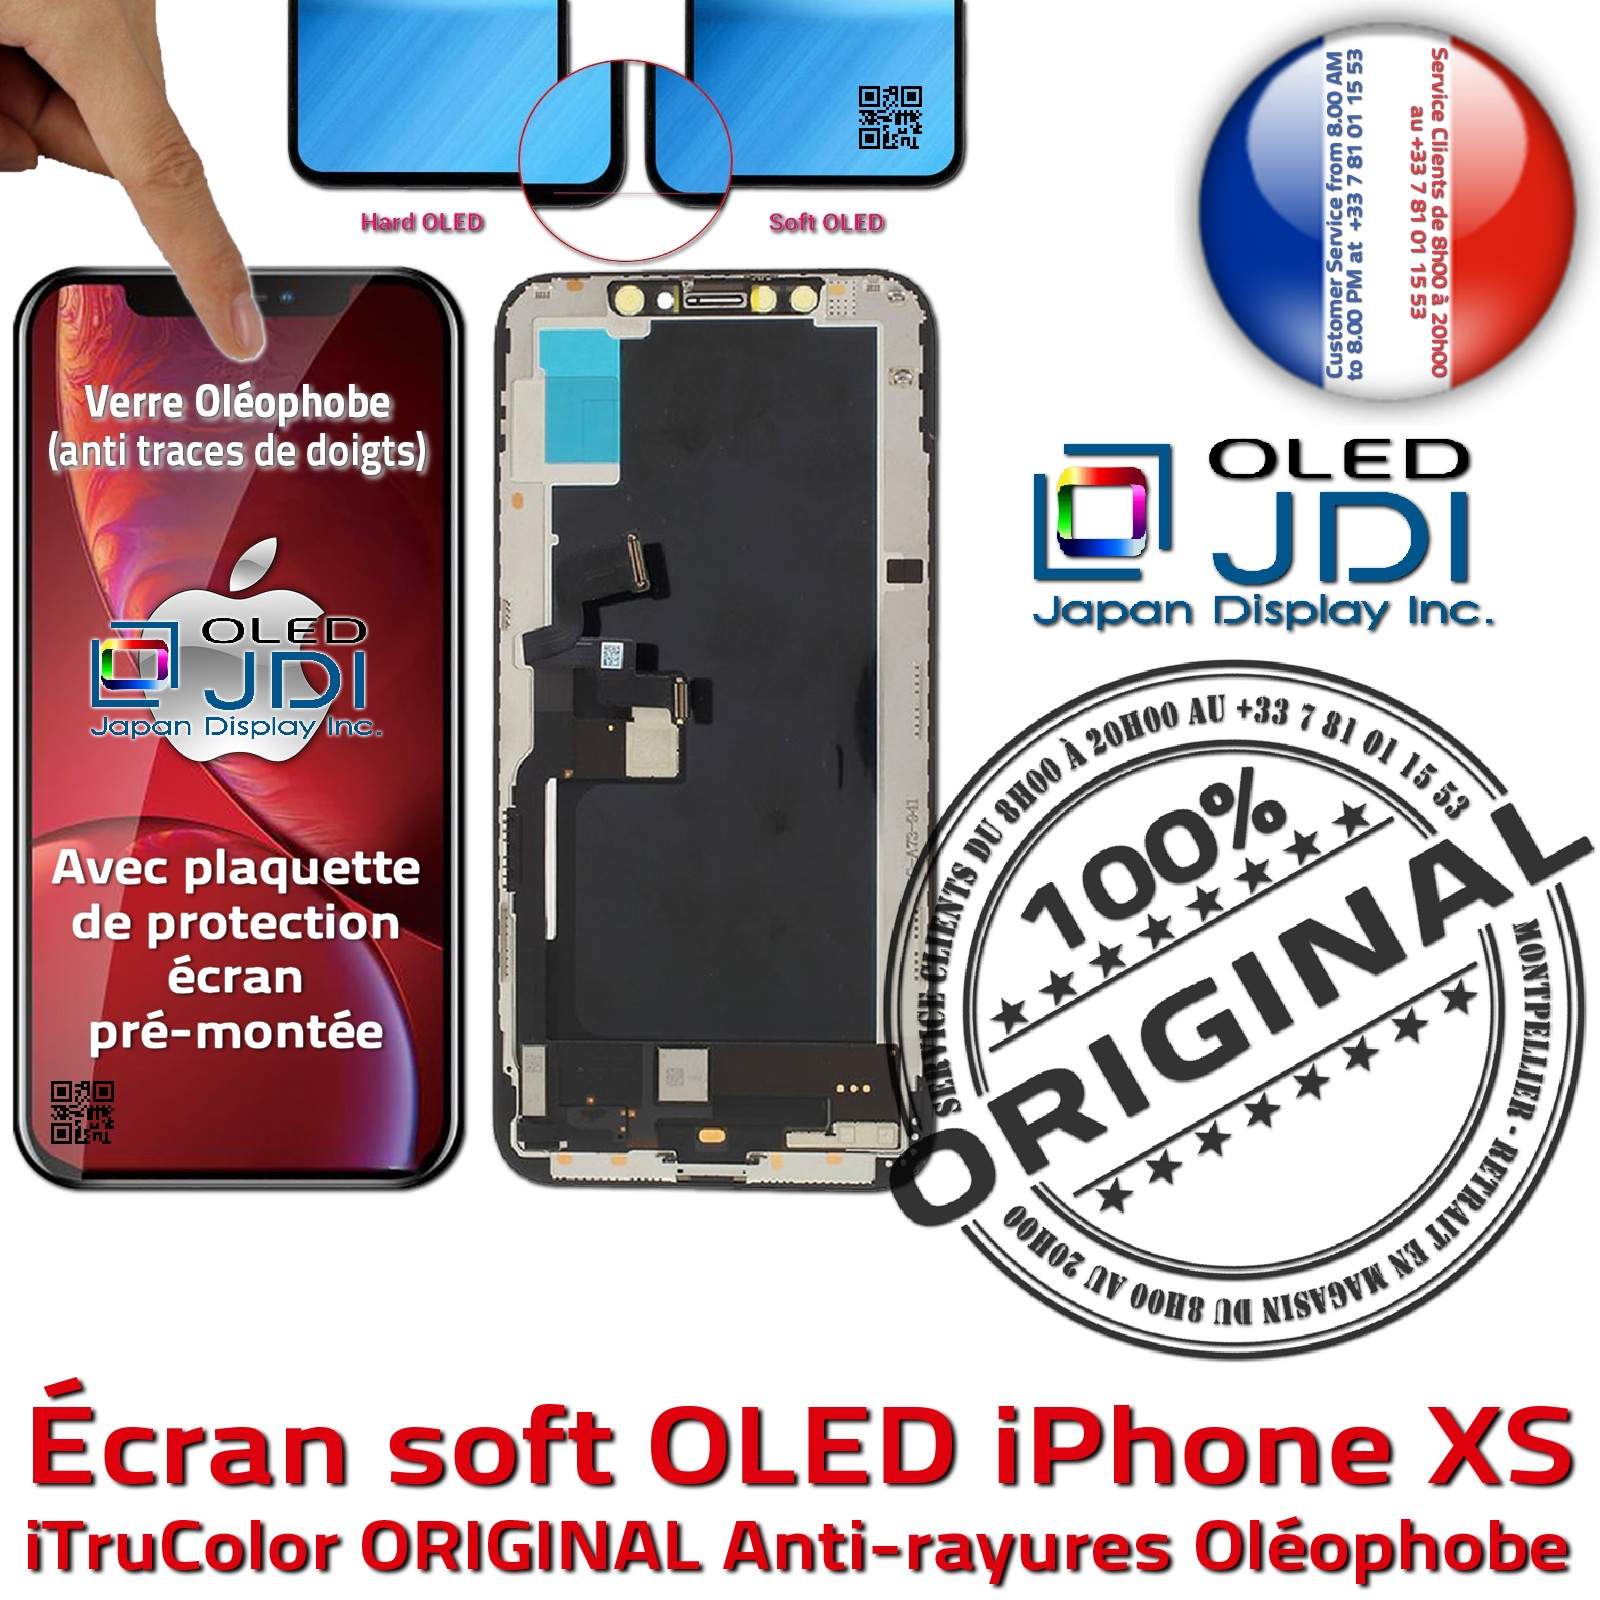 HDR ORIGINAL Verre Tactile iPhone XS iTruColor soft OLED Qualité SmartPhone 3D Touch Réparation Écran HD Super Retina 5.8 in